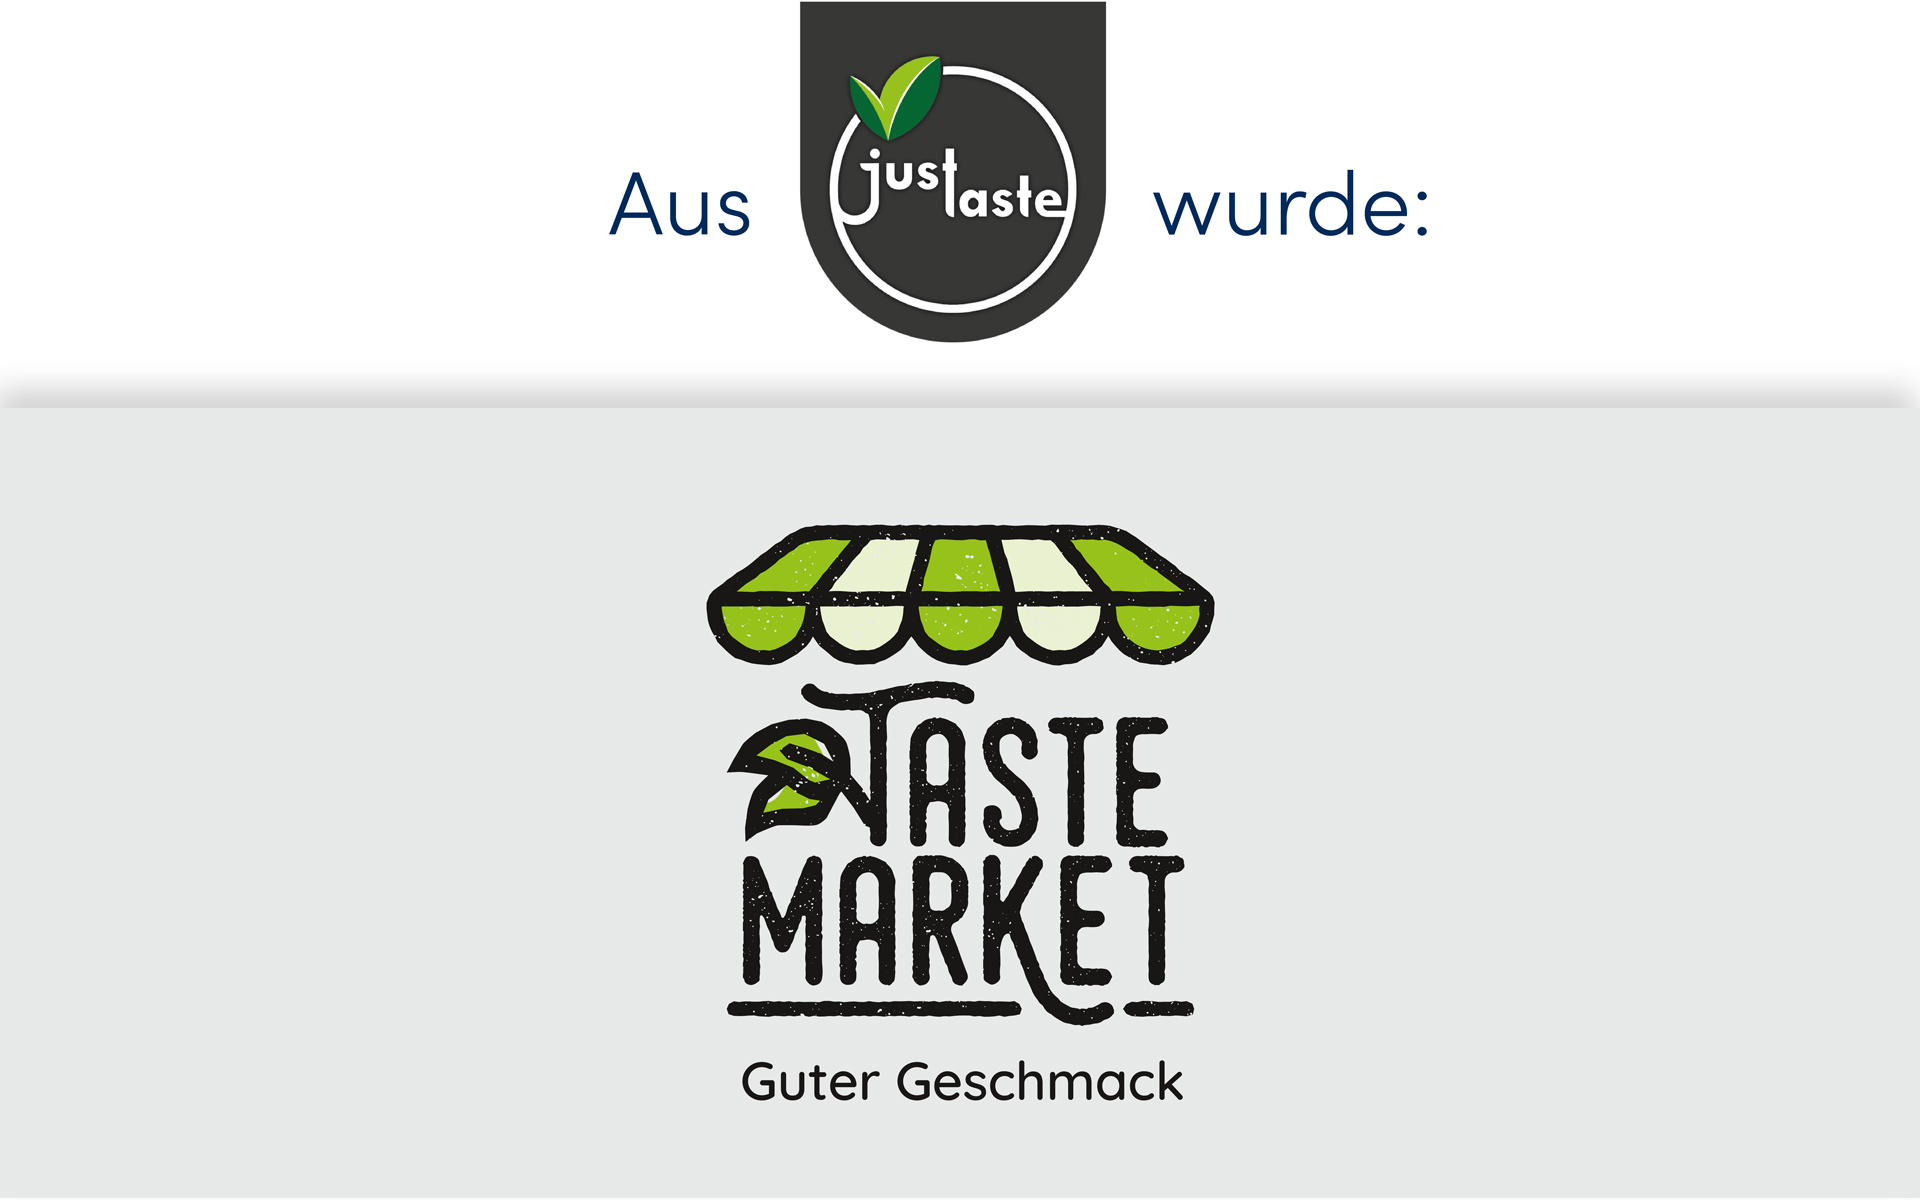 Taste Market / justaste